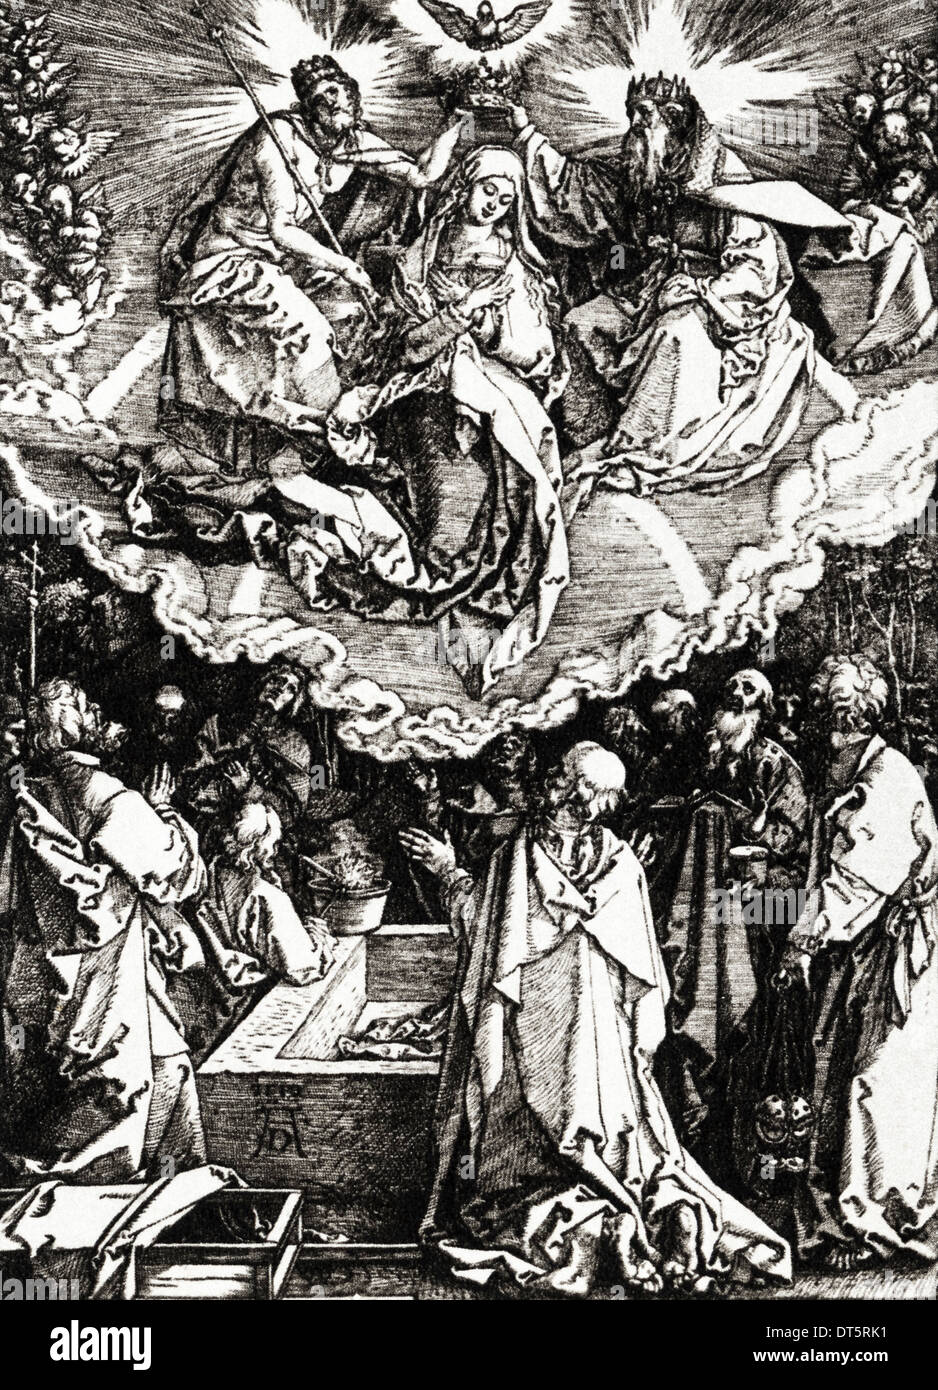 Assunzione e Incoronazione della Vergine (dalla vita della Vergine) xilografia da Albrecht Durer circa 1510 artista tedesco 1471 - 1528 Foto Stock